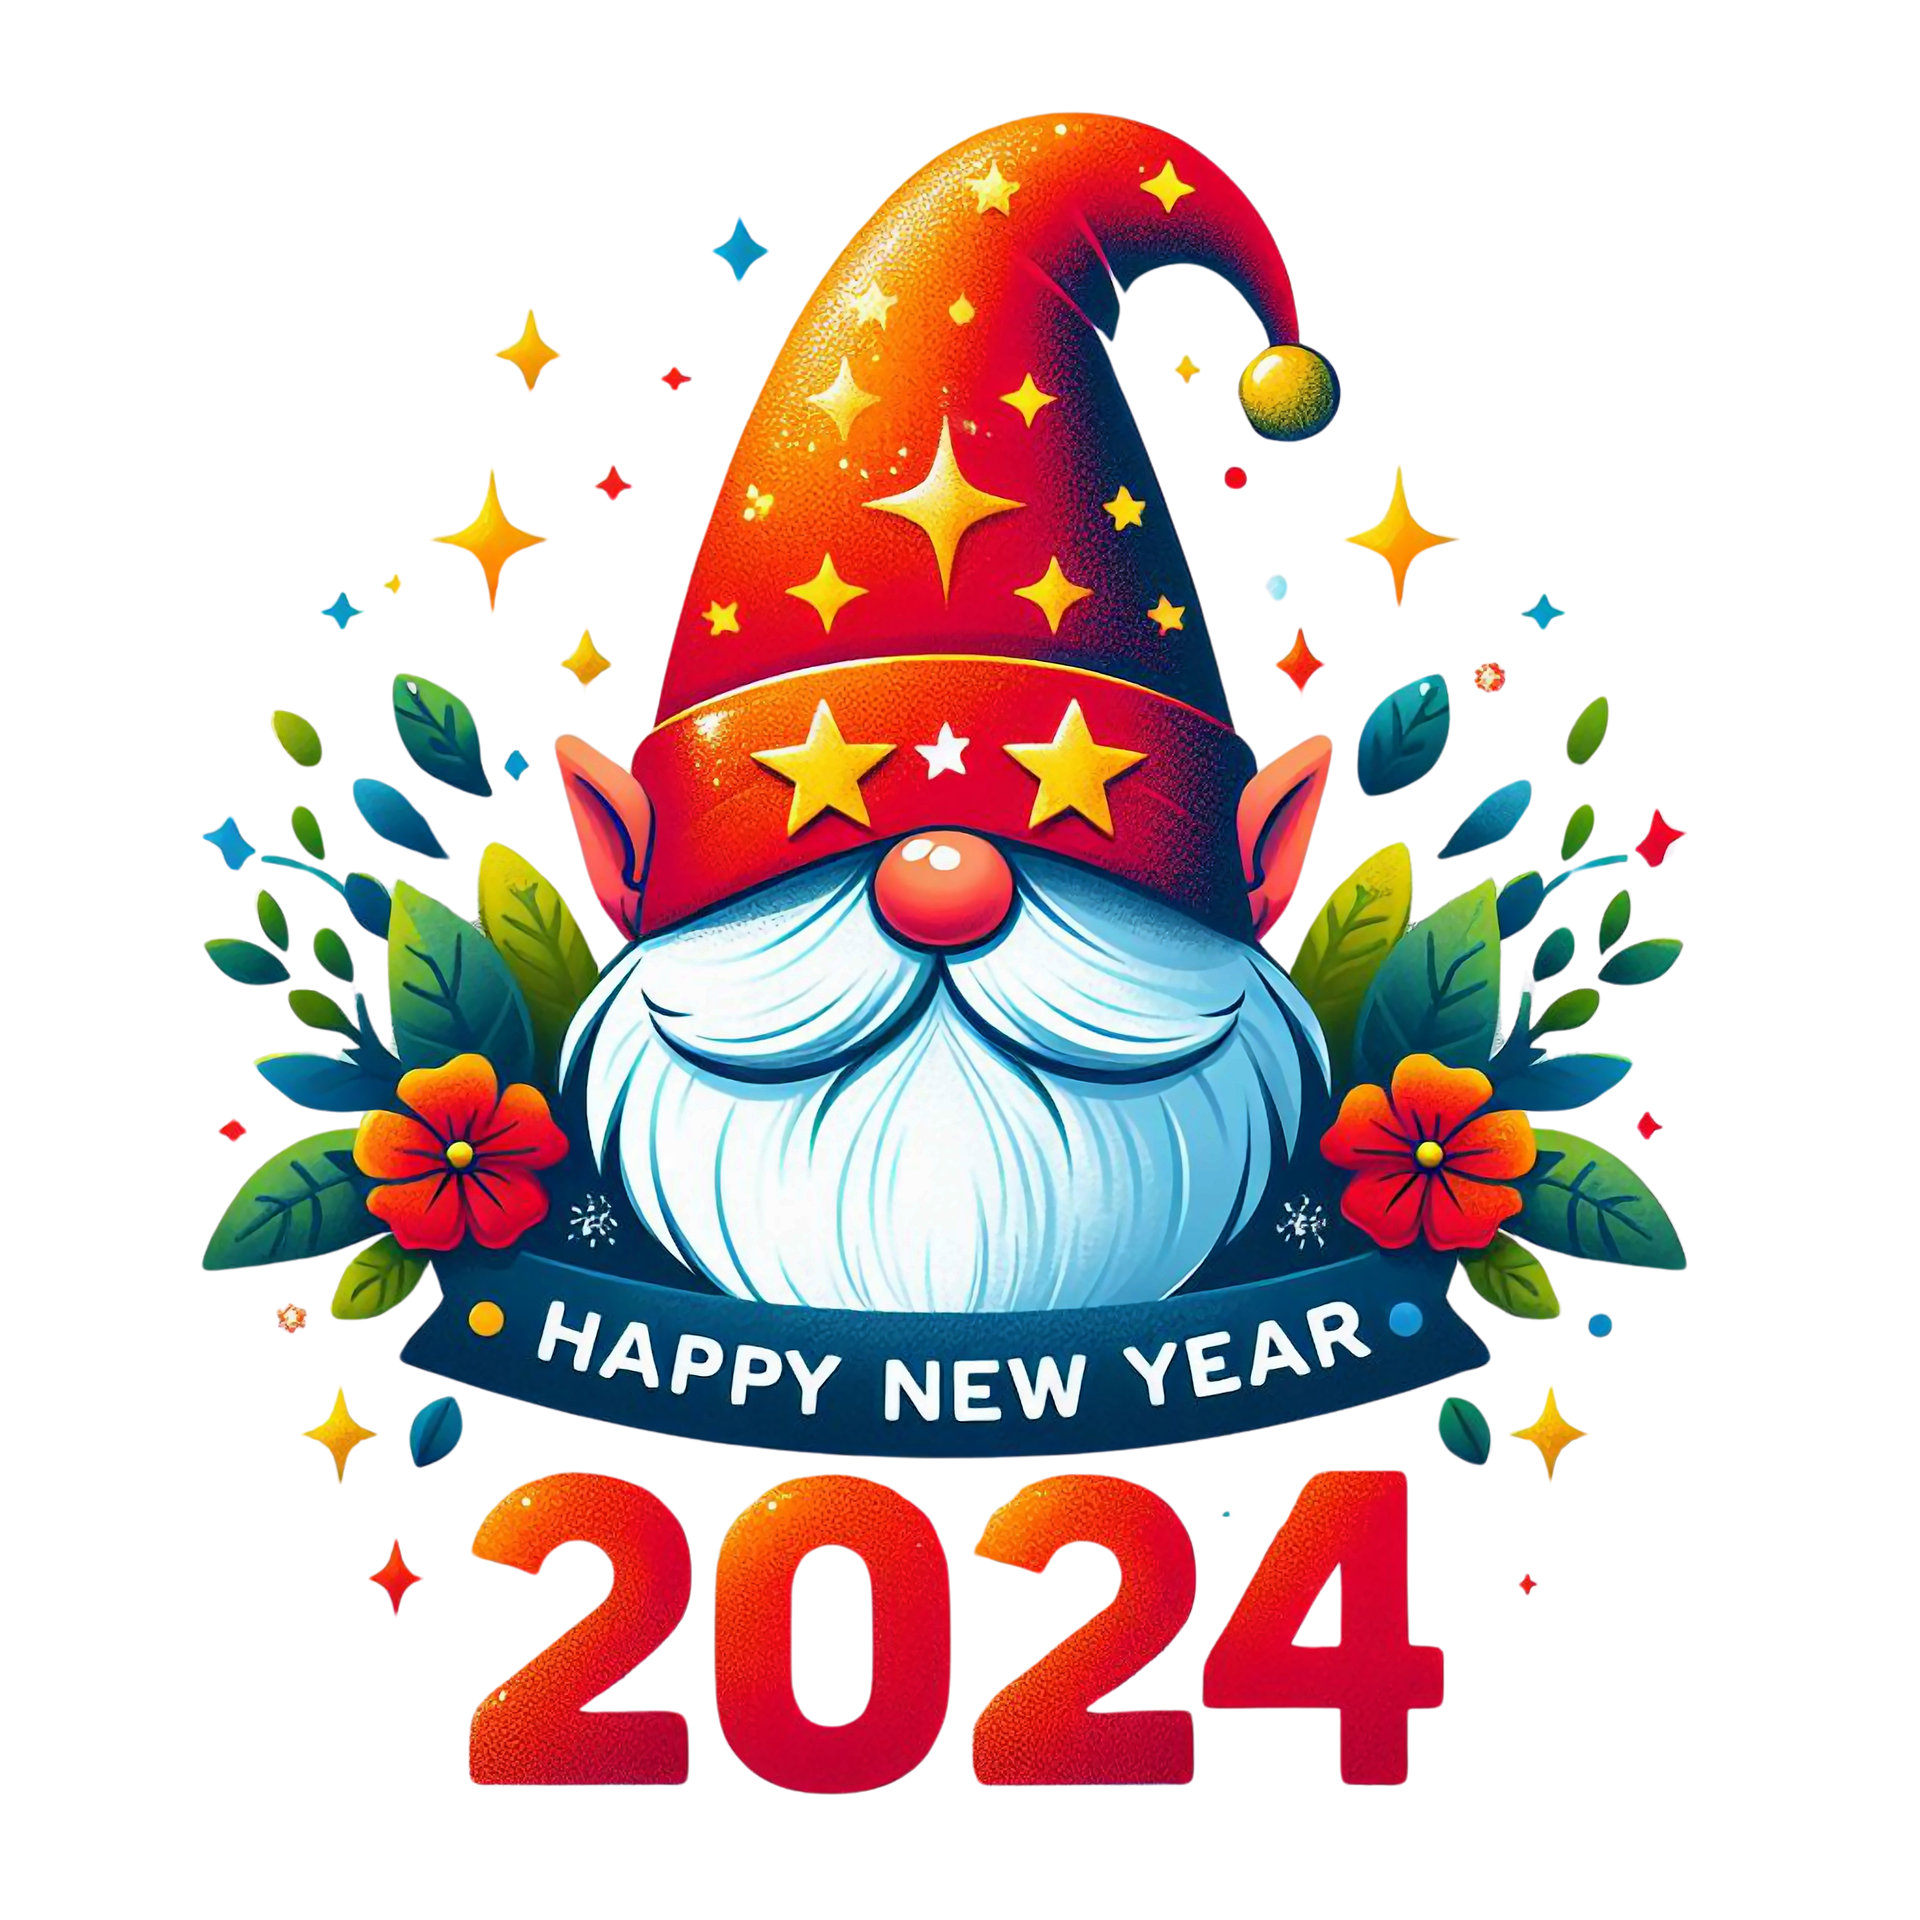 Ngày đầu năm mới 2024, 3 điều cần làm để cả năm gặp may mắn, mọi sự thuận buồm xuôi gió - Ảnh 3.